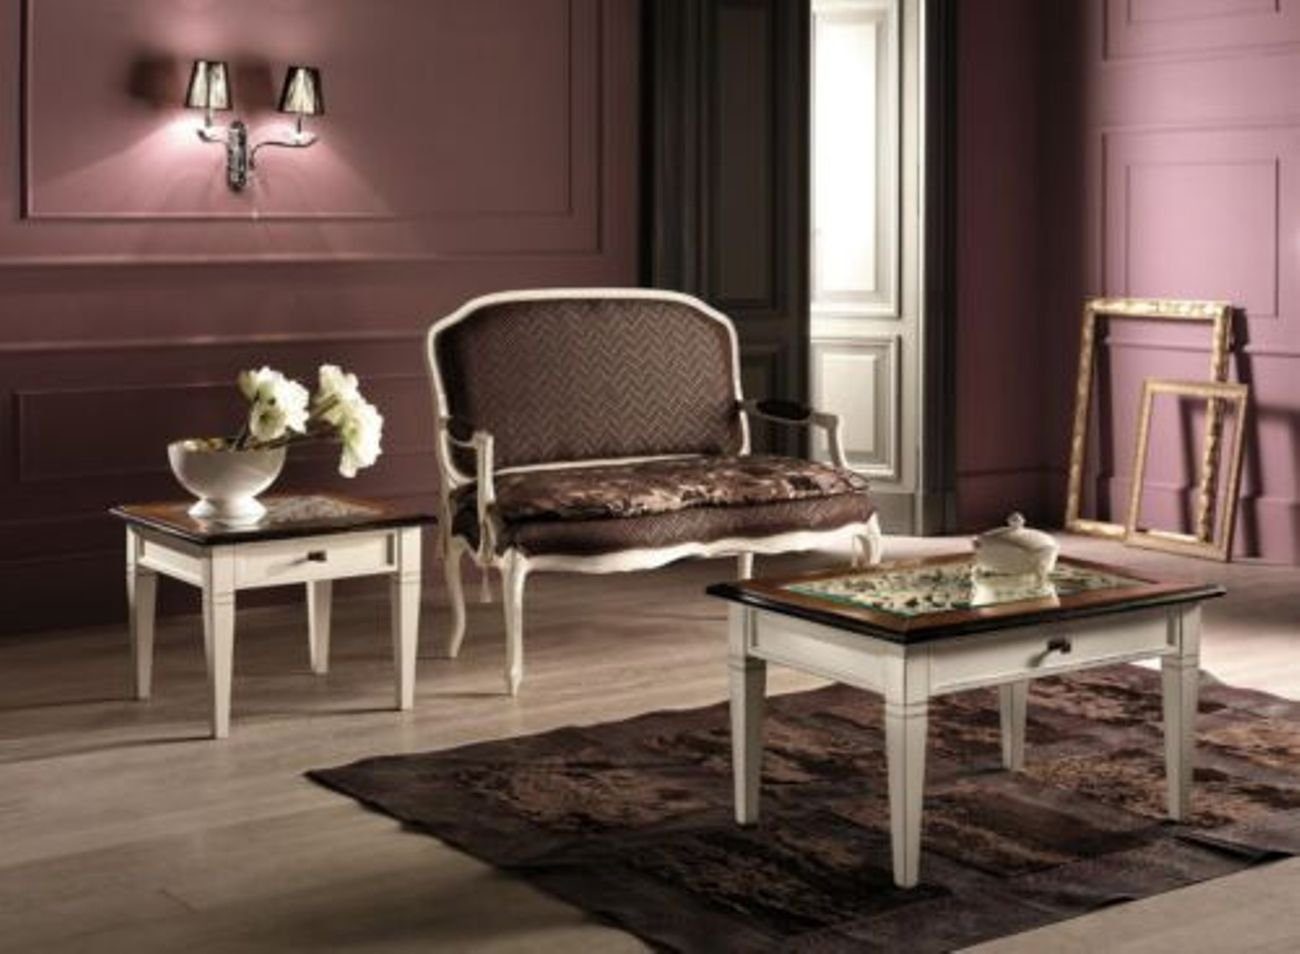 JVmoebel Couchtisch, Tische Möbel Tisch Italienische Couchtische Holz Luxus Design Konsolen